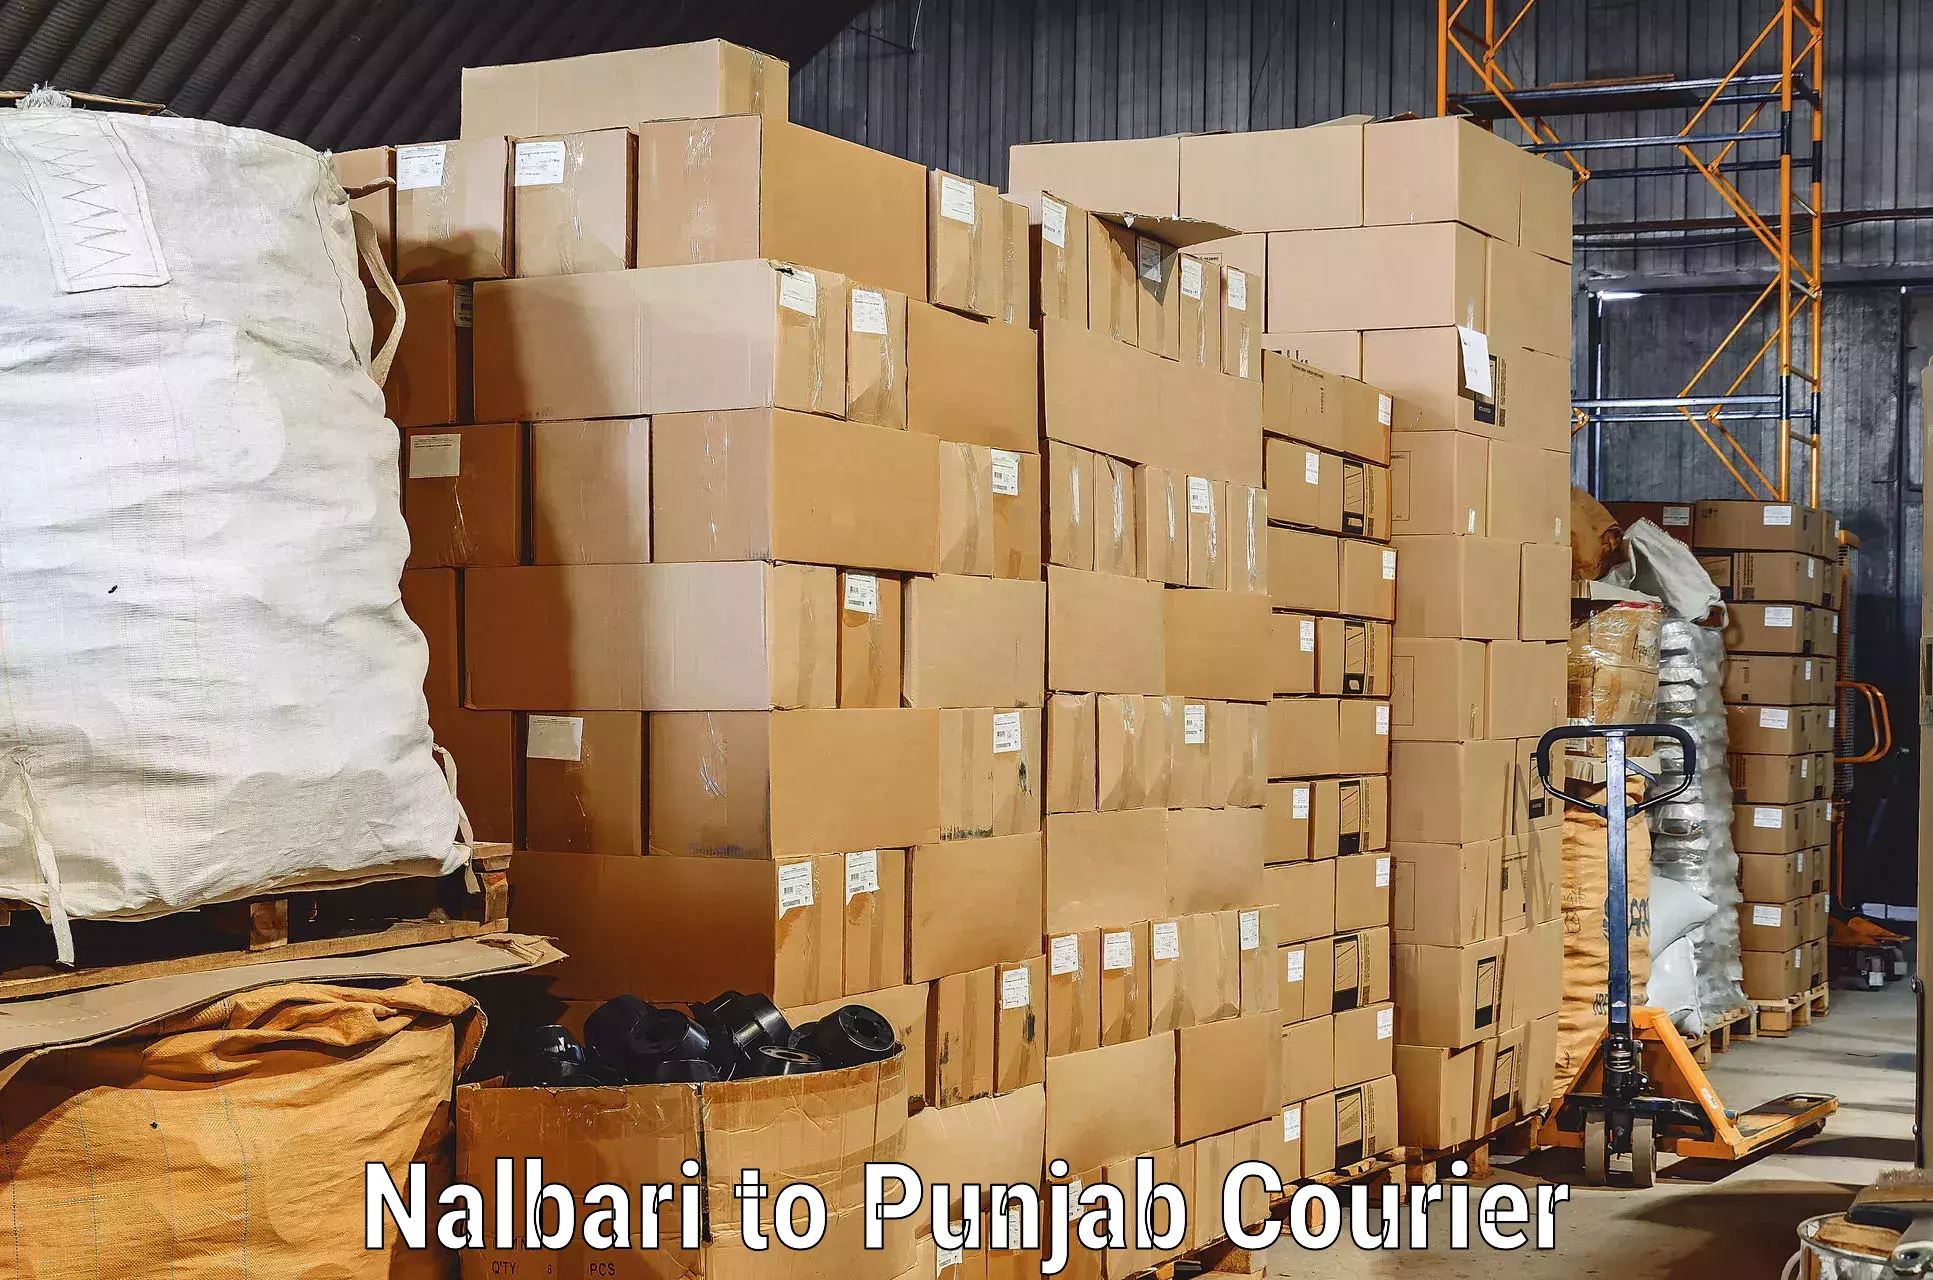 Moving and handling services Nalbari to Kapurthala